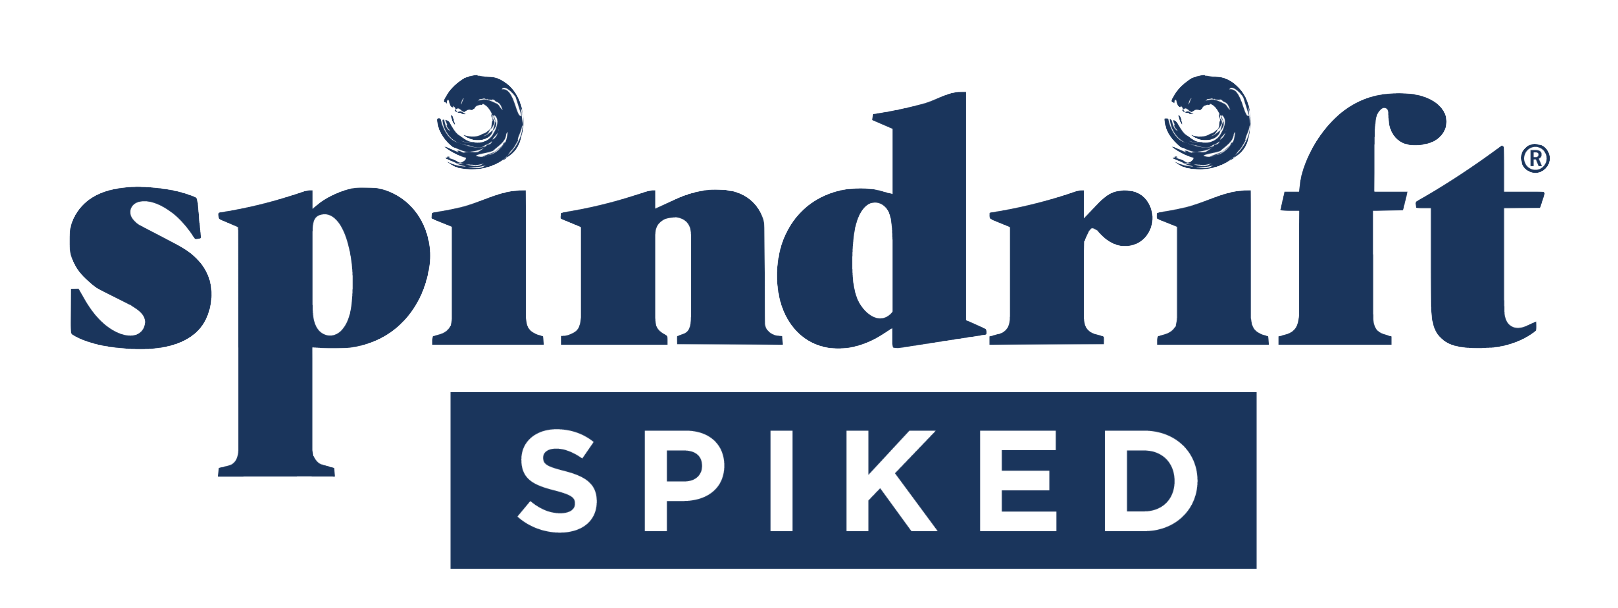 Spindrift logo.png